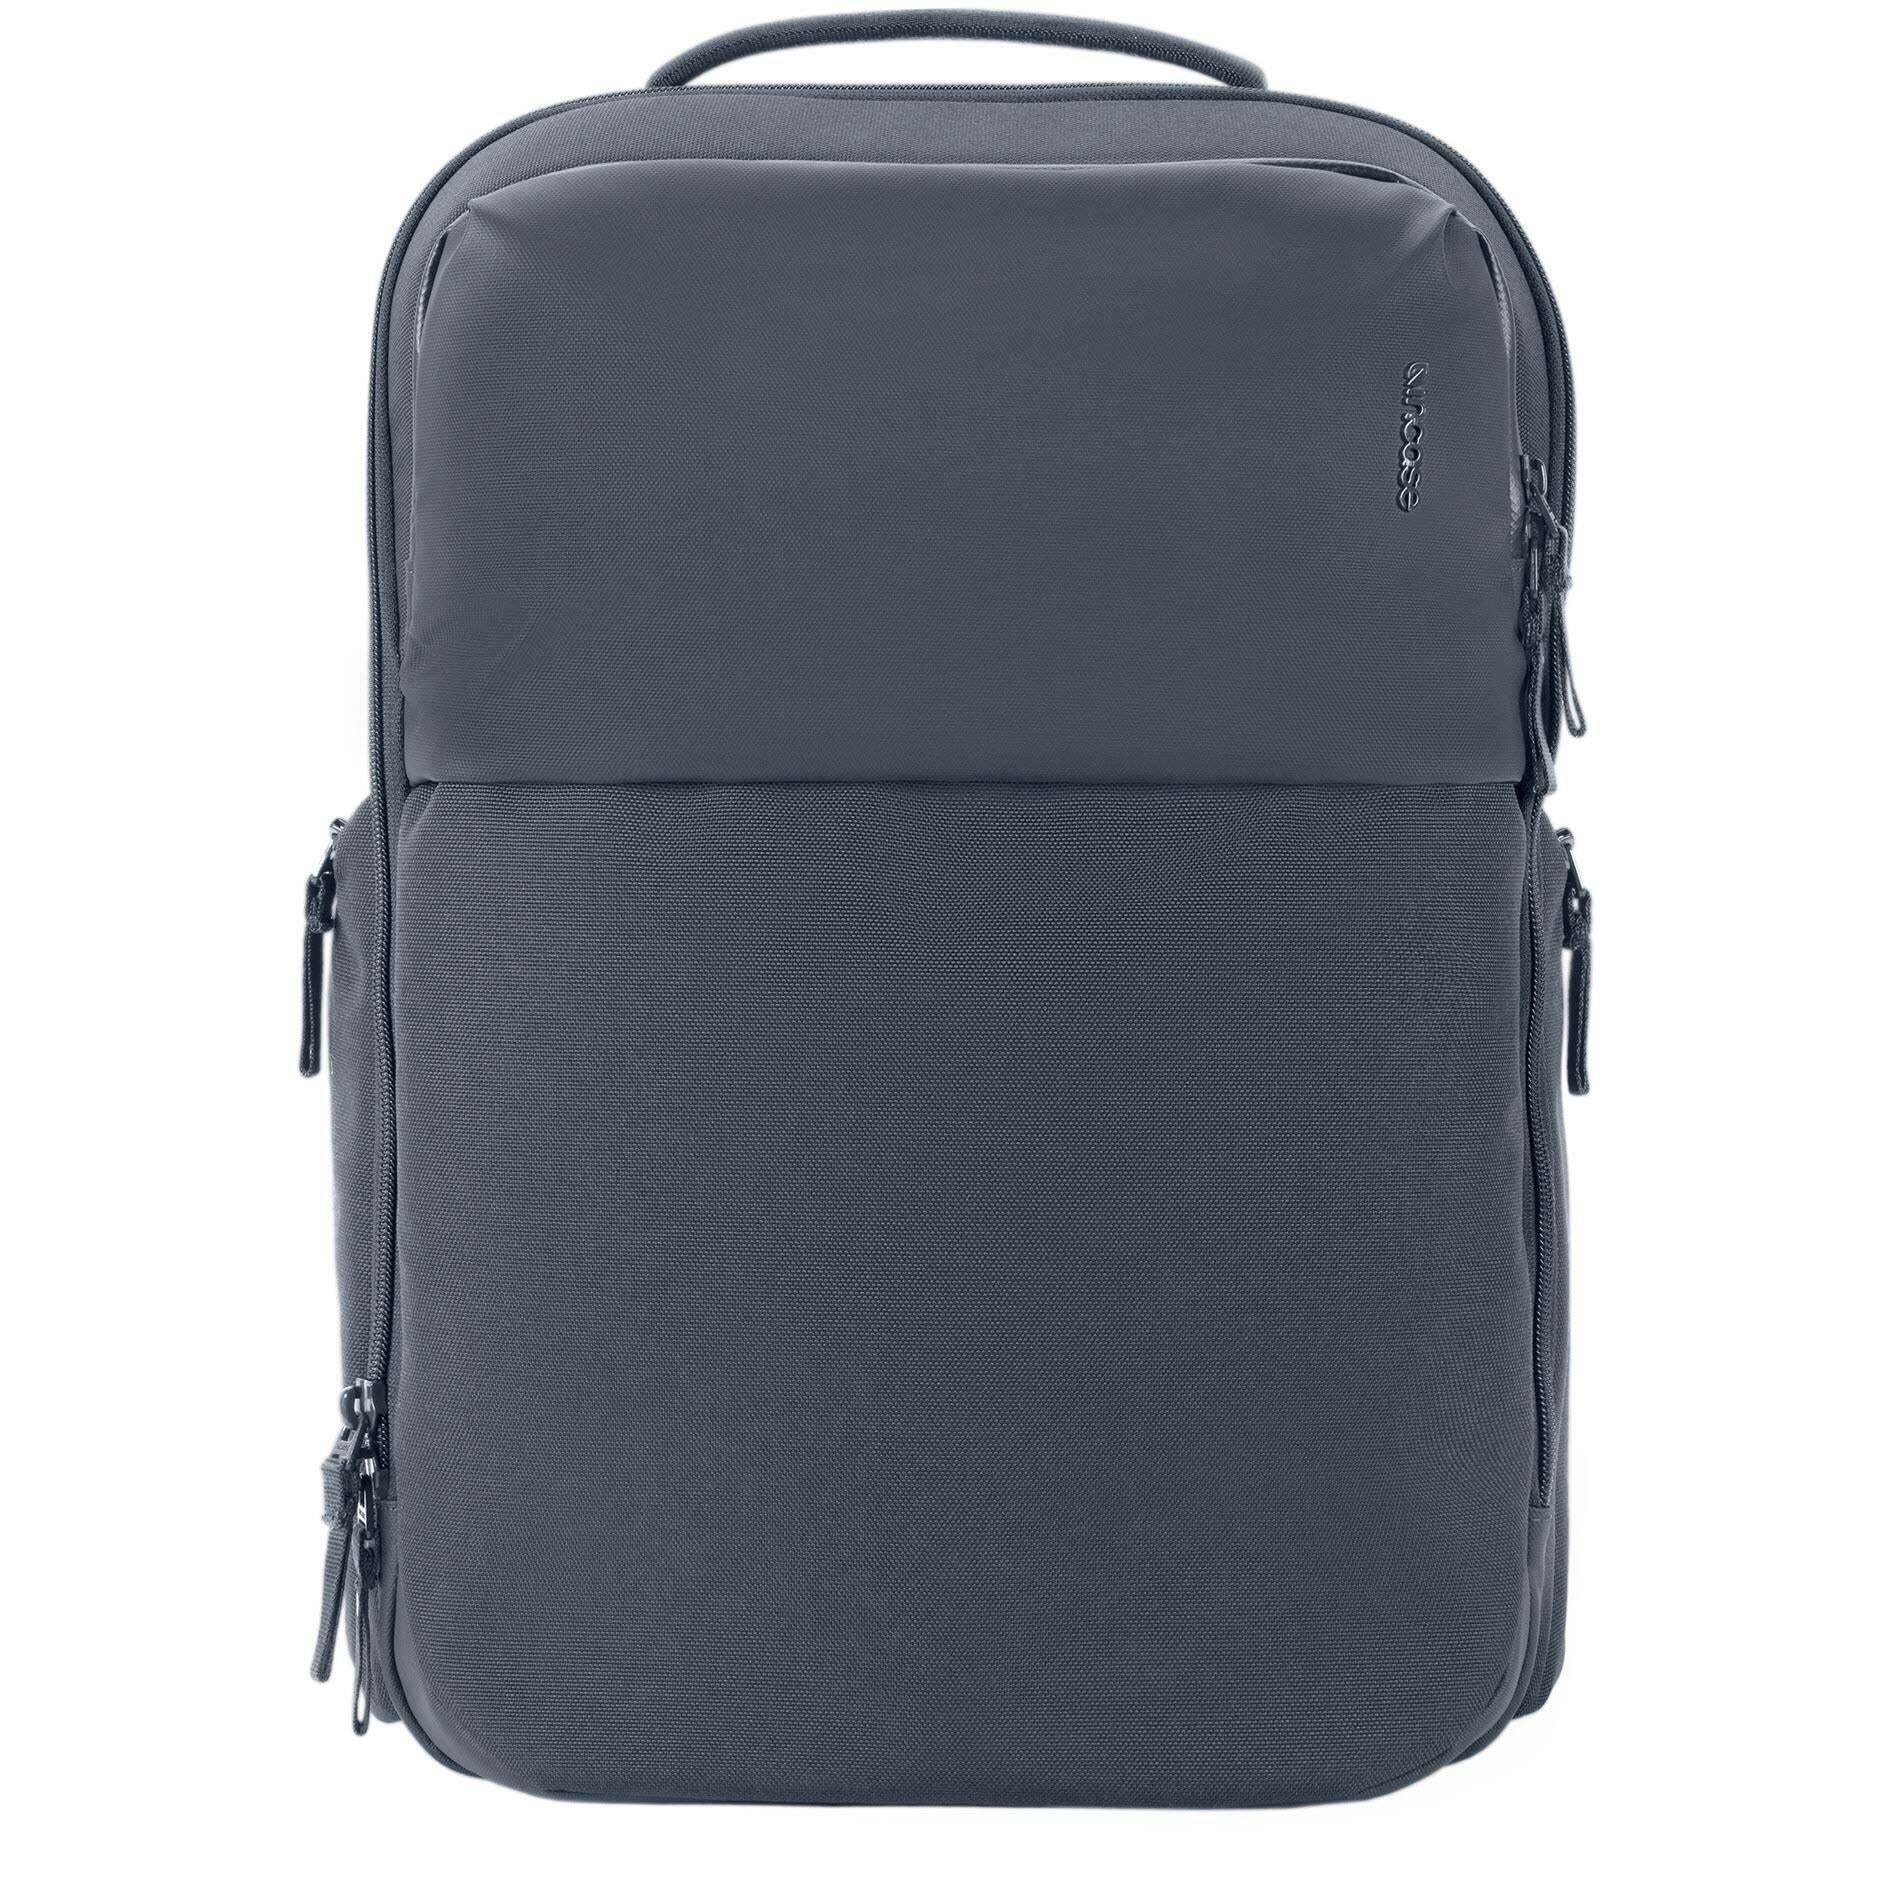 Incase A.R.C. Daypack Backpack Laptop Bag Navy